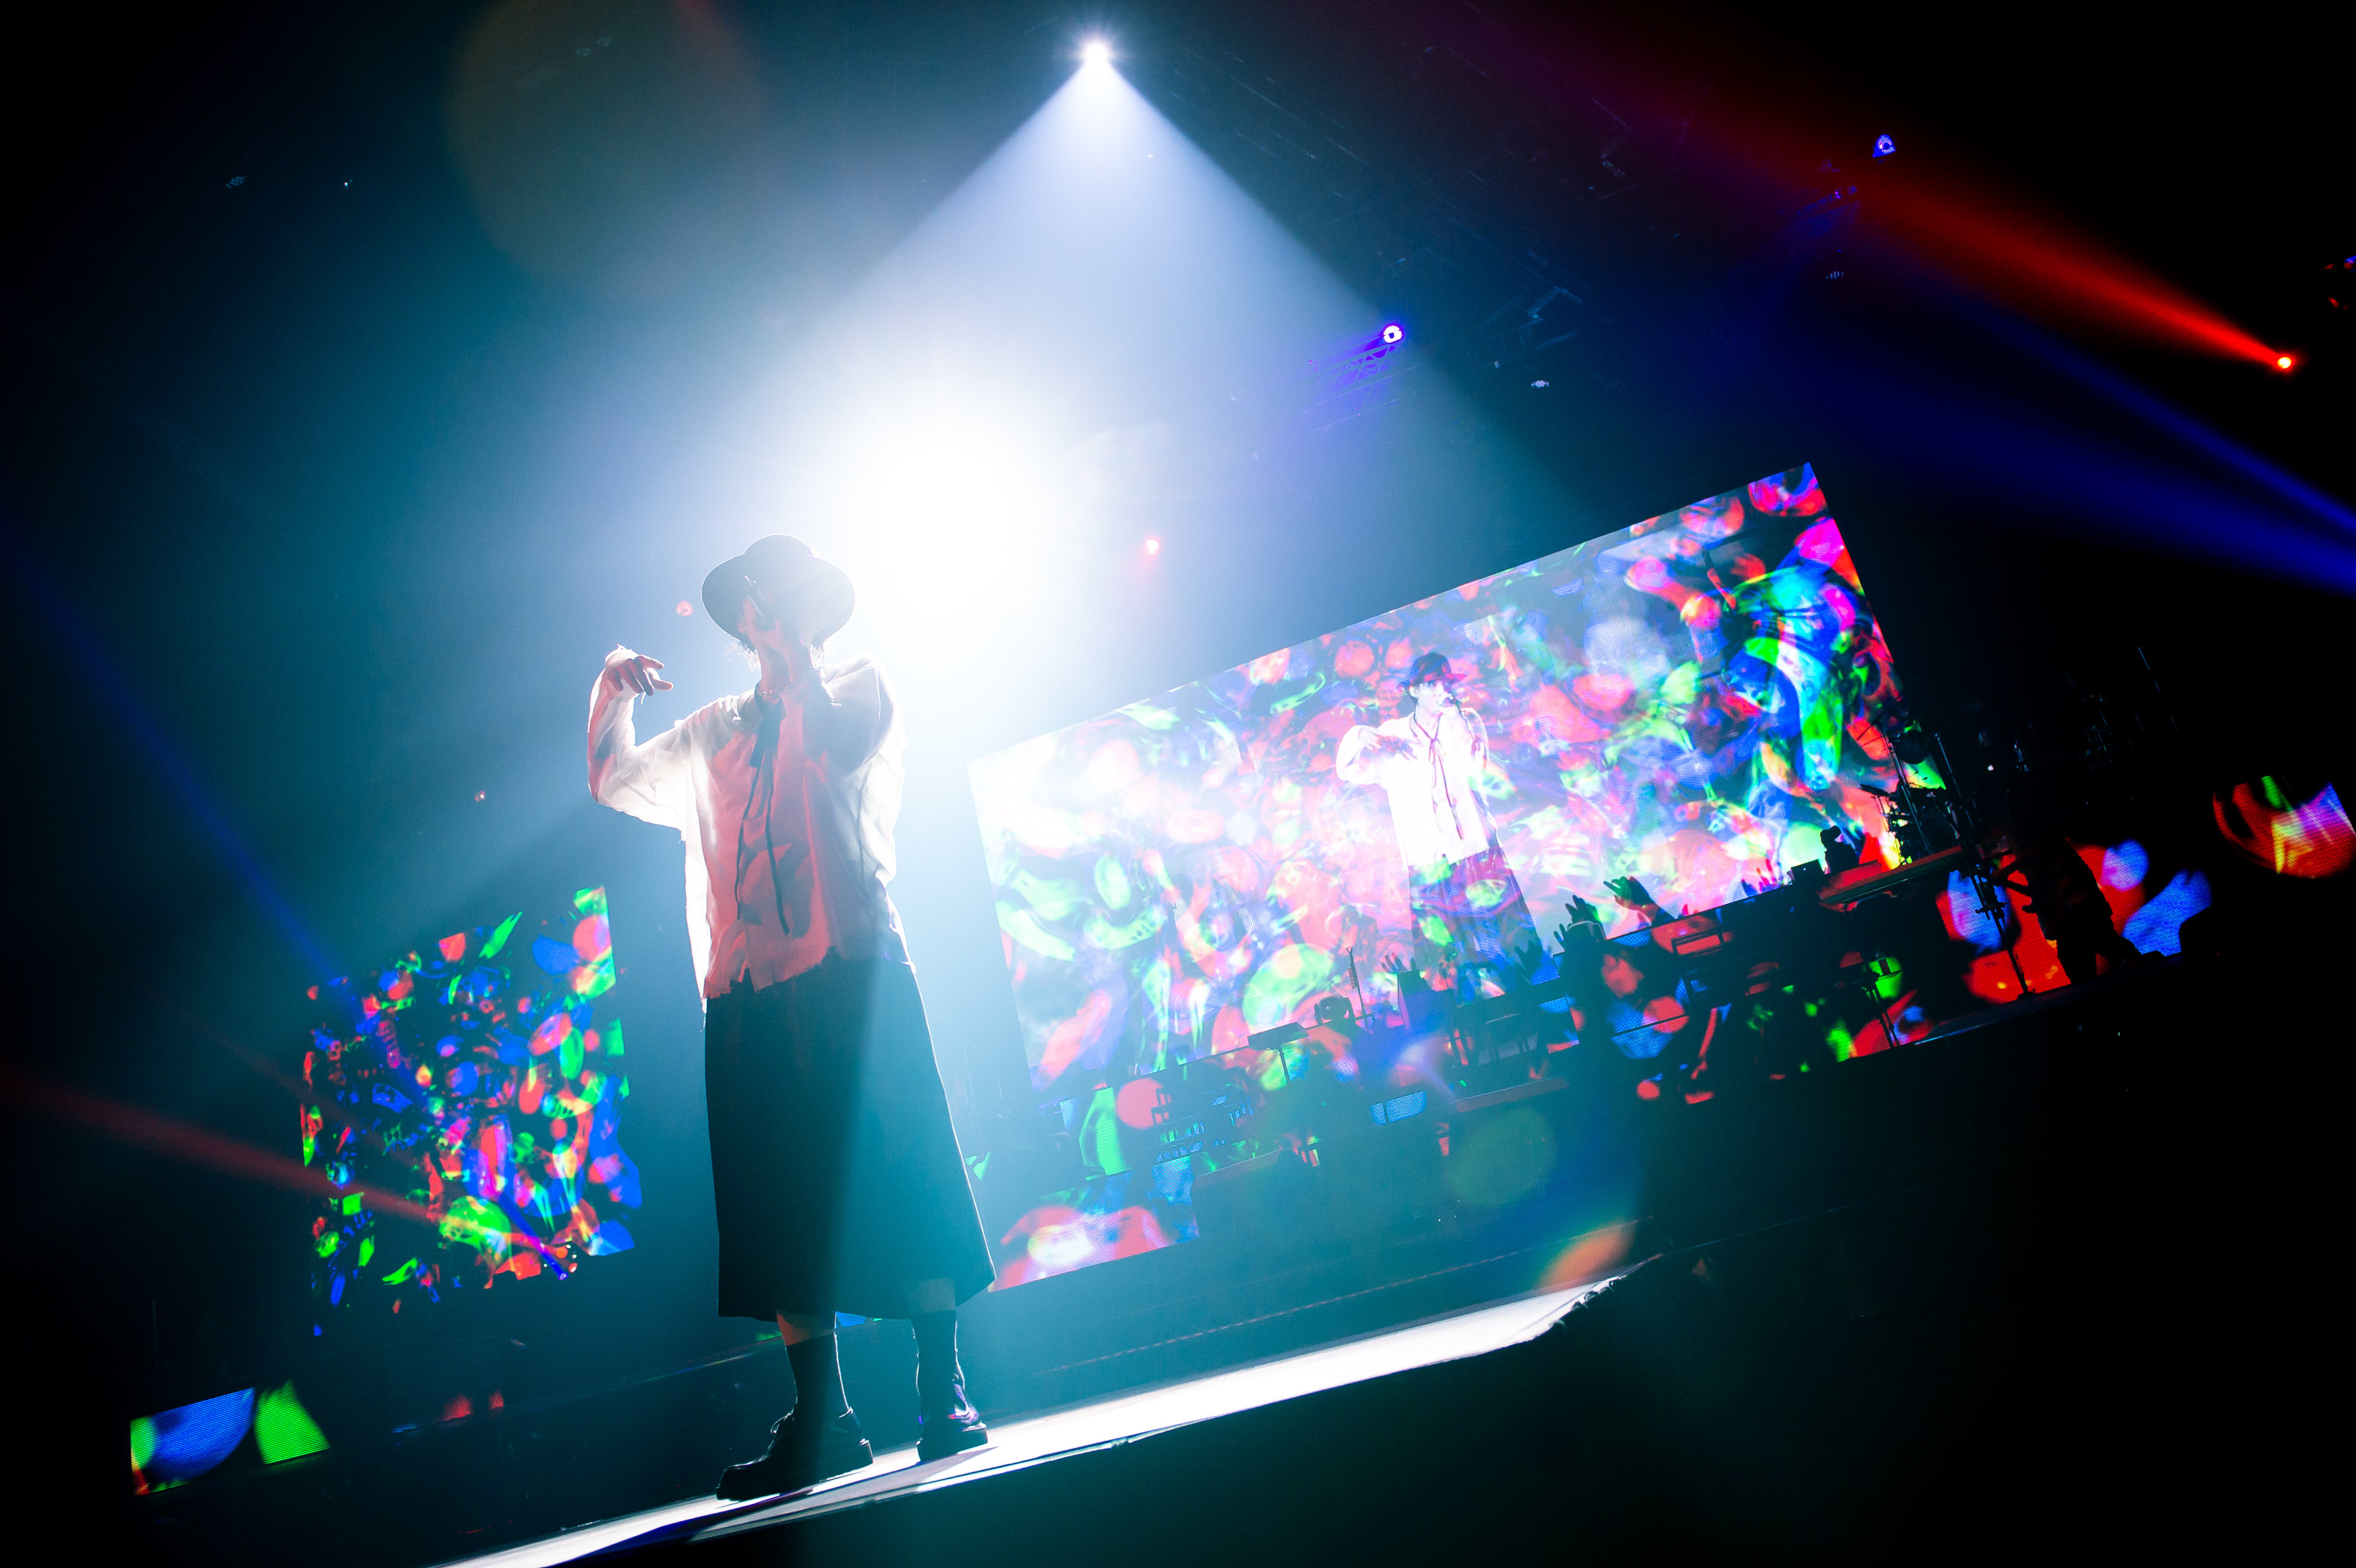 Radwimps 全国ツアー完遂 Anti Anti Generation Tour 19 ファイナル横浜アリーナ公演公式レポートが到着 Spice エンタメ特化型情報メディア スパイス